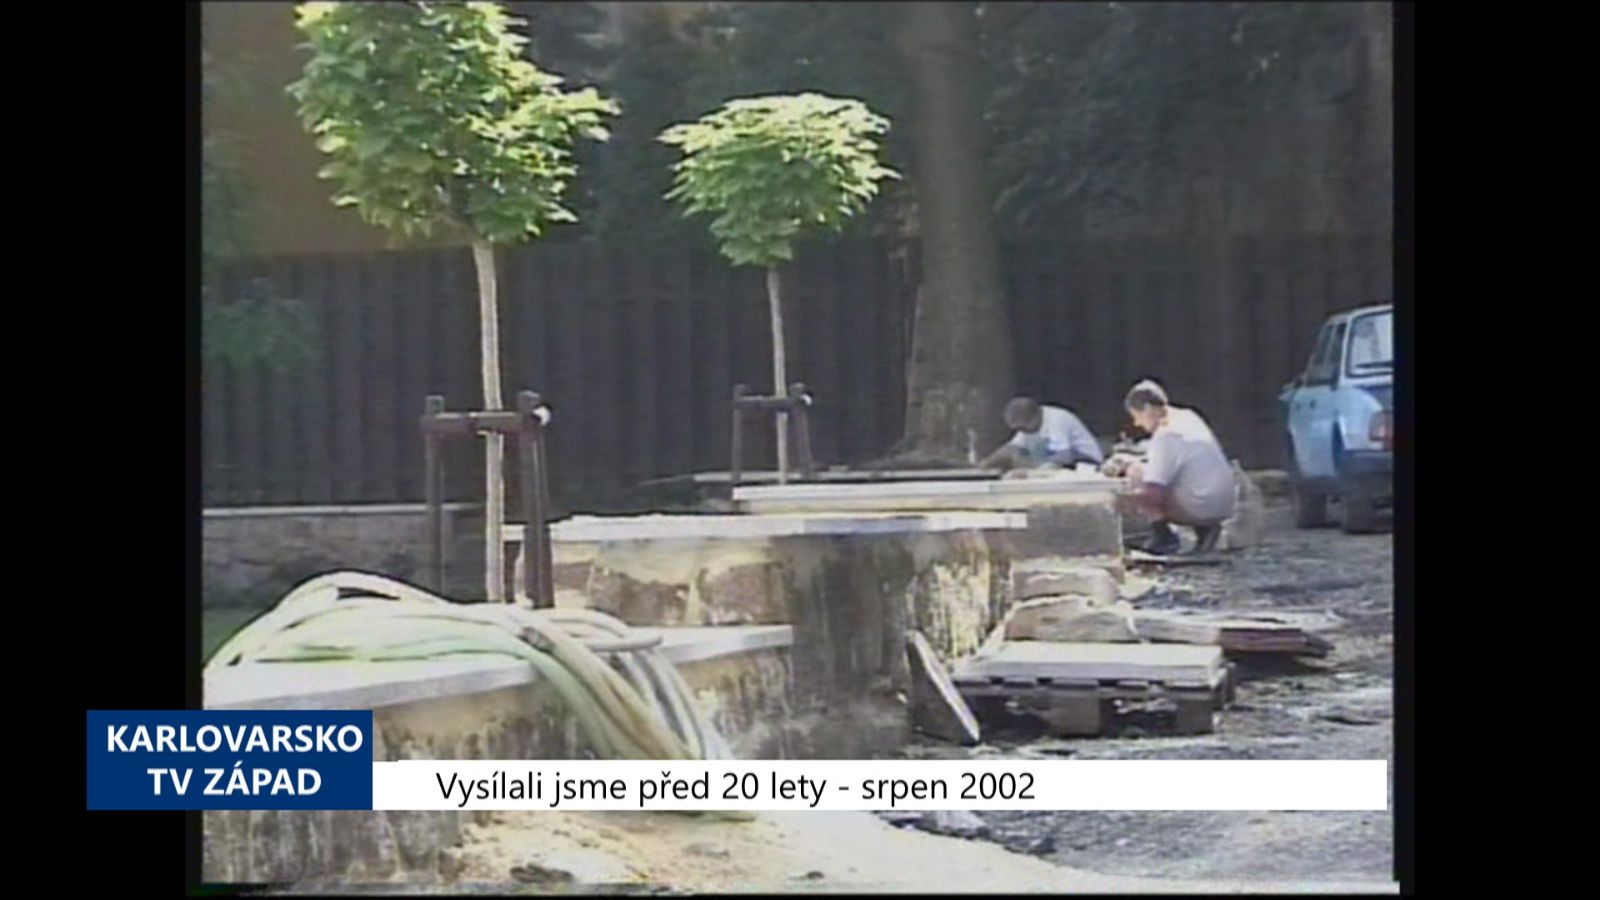 2002 – Cheb: Zrekonstruovaná Klášterní zahrada bude otevřena 12. října (TV Západ)